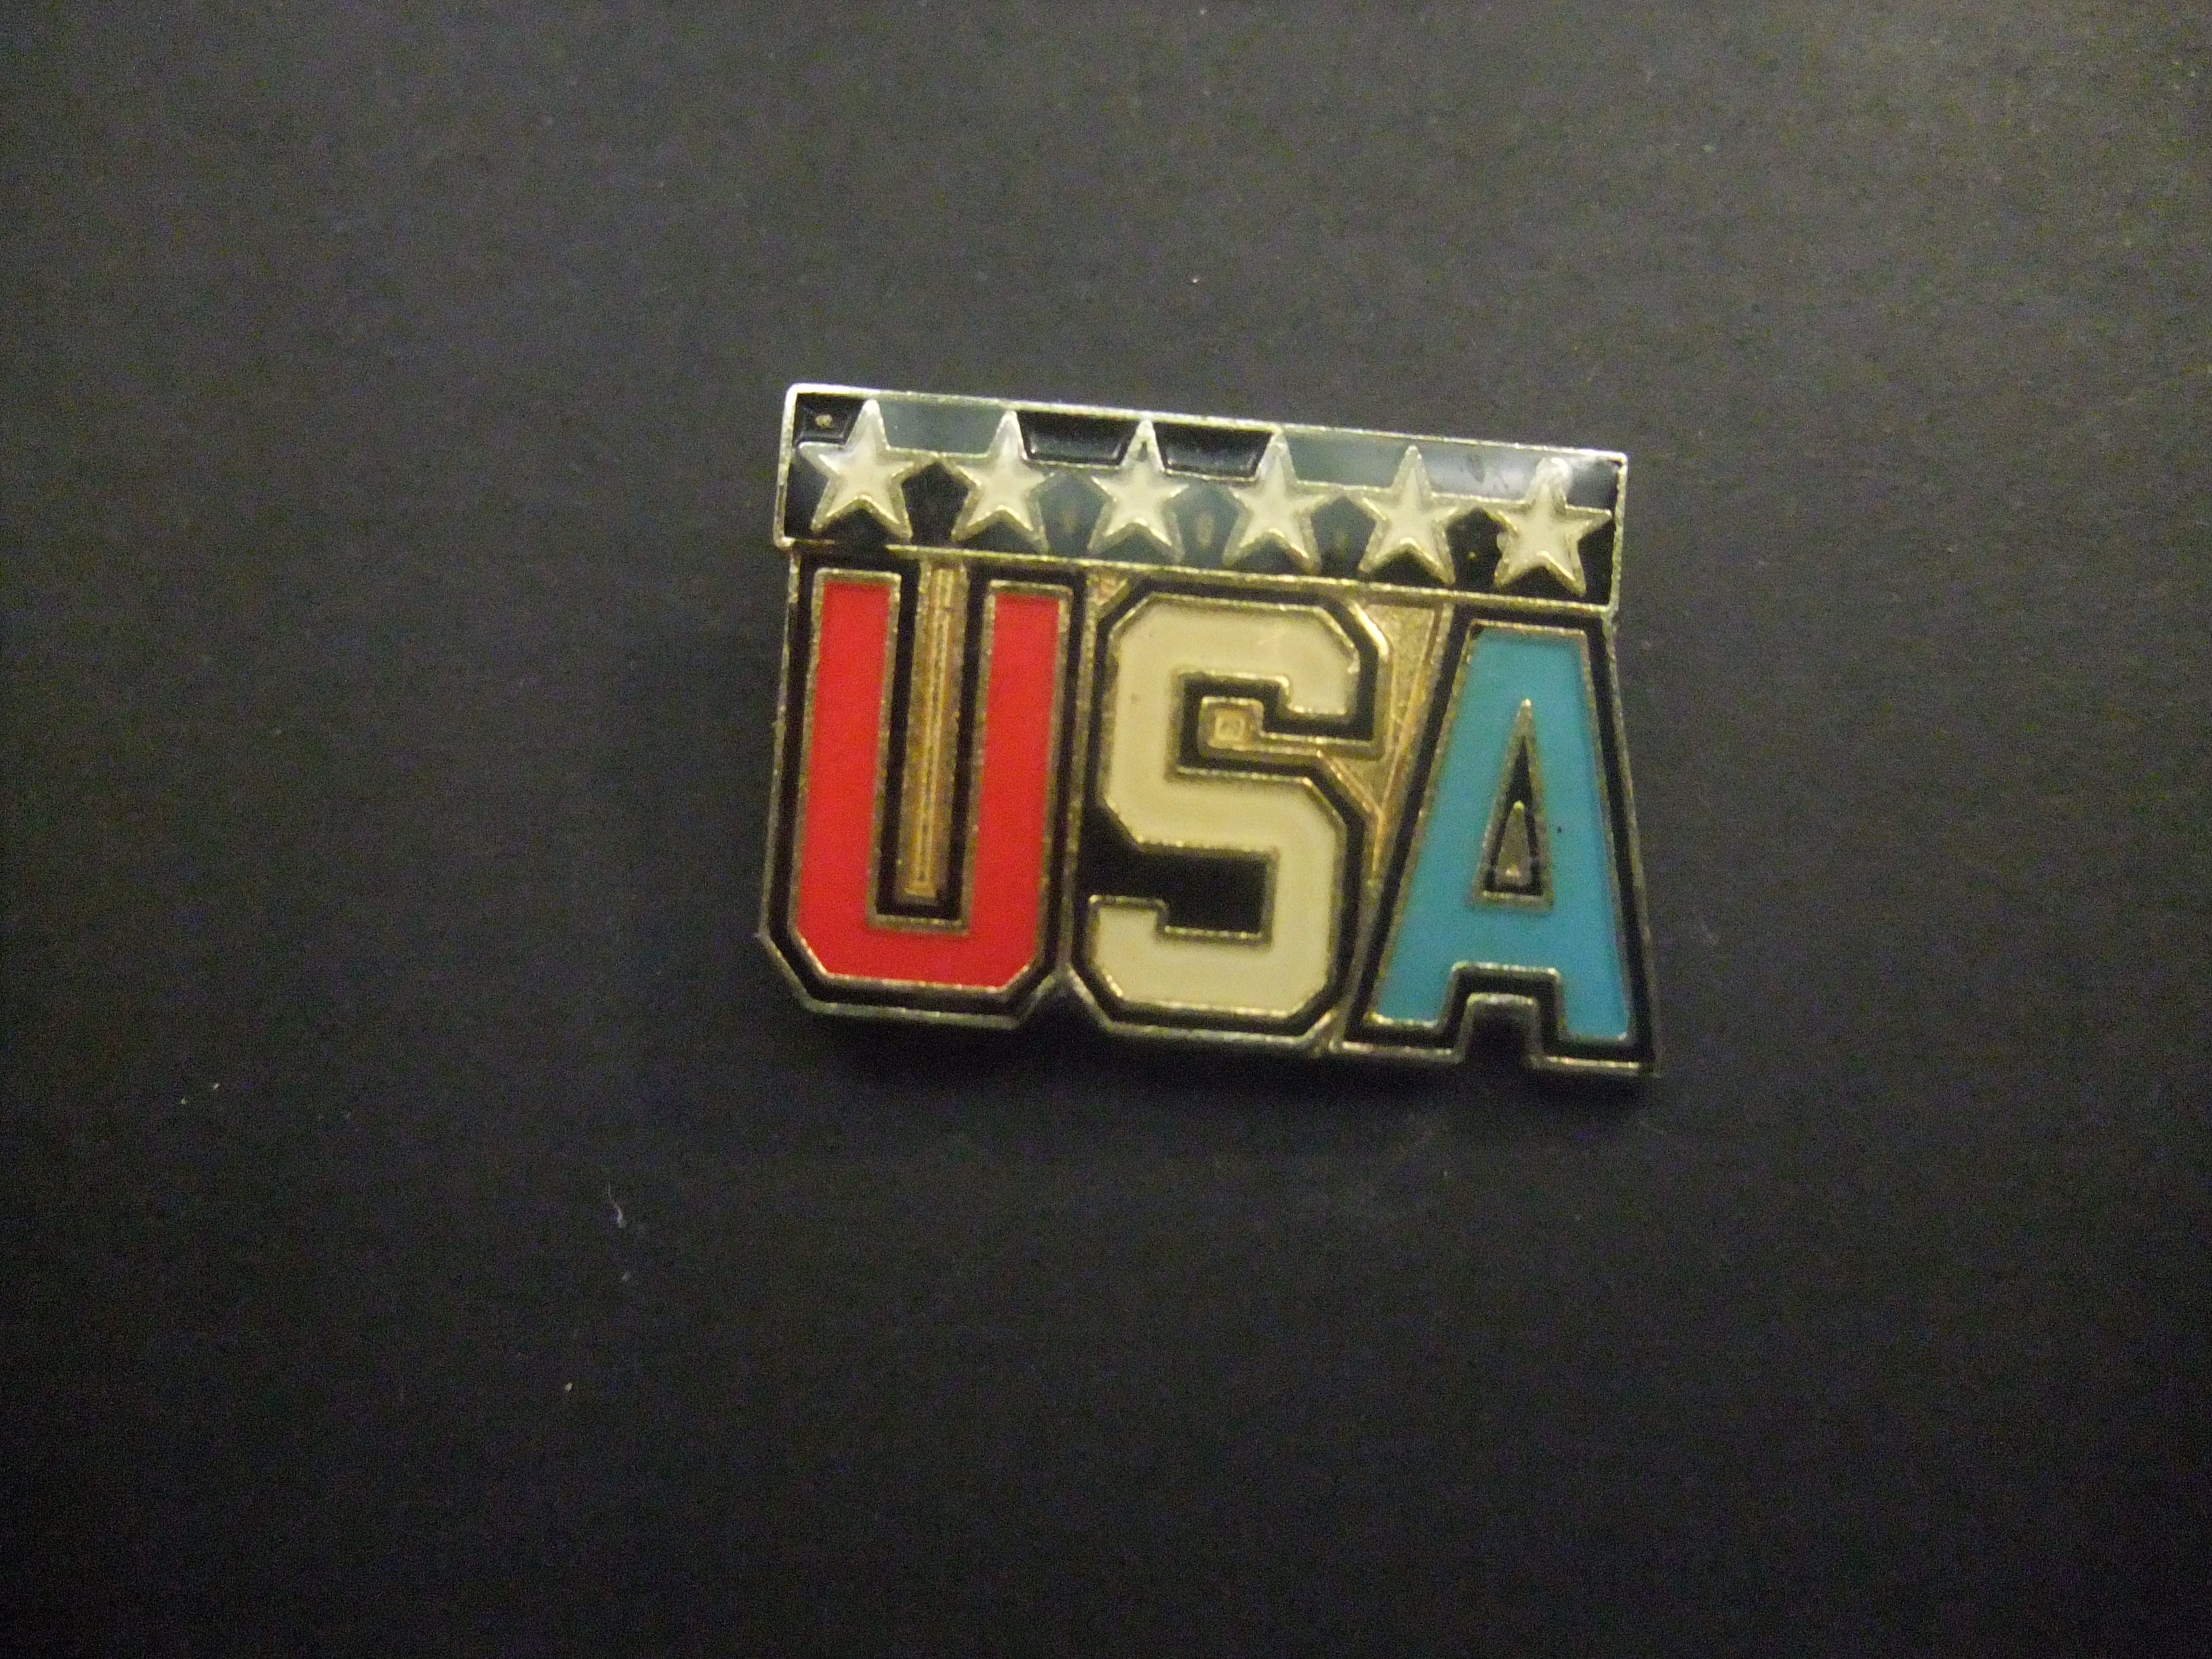 USA gekleurd logo met zes sterren (van de staten)